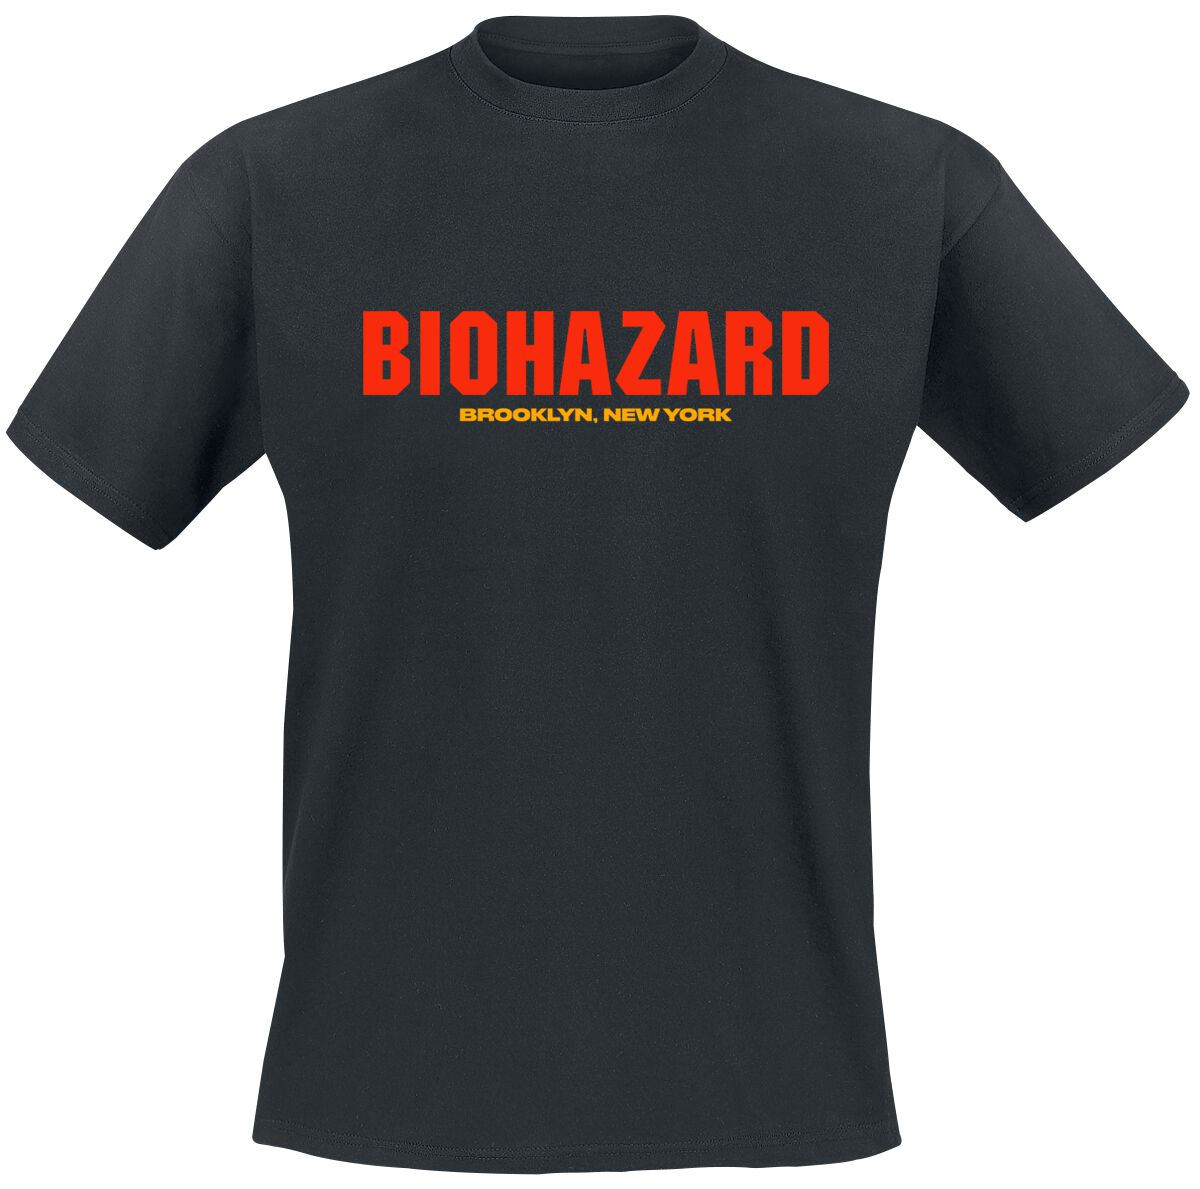 Biohazard T-Shirt - Urban discipline - S bis 4XL - für Männer - Größe L - schwarz  - Lizenziertes Merchandise!